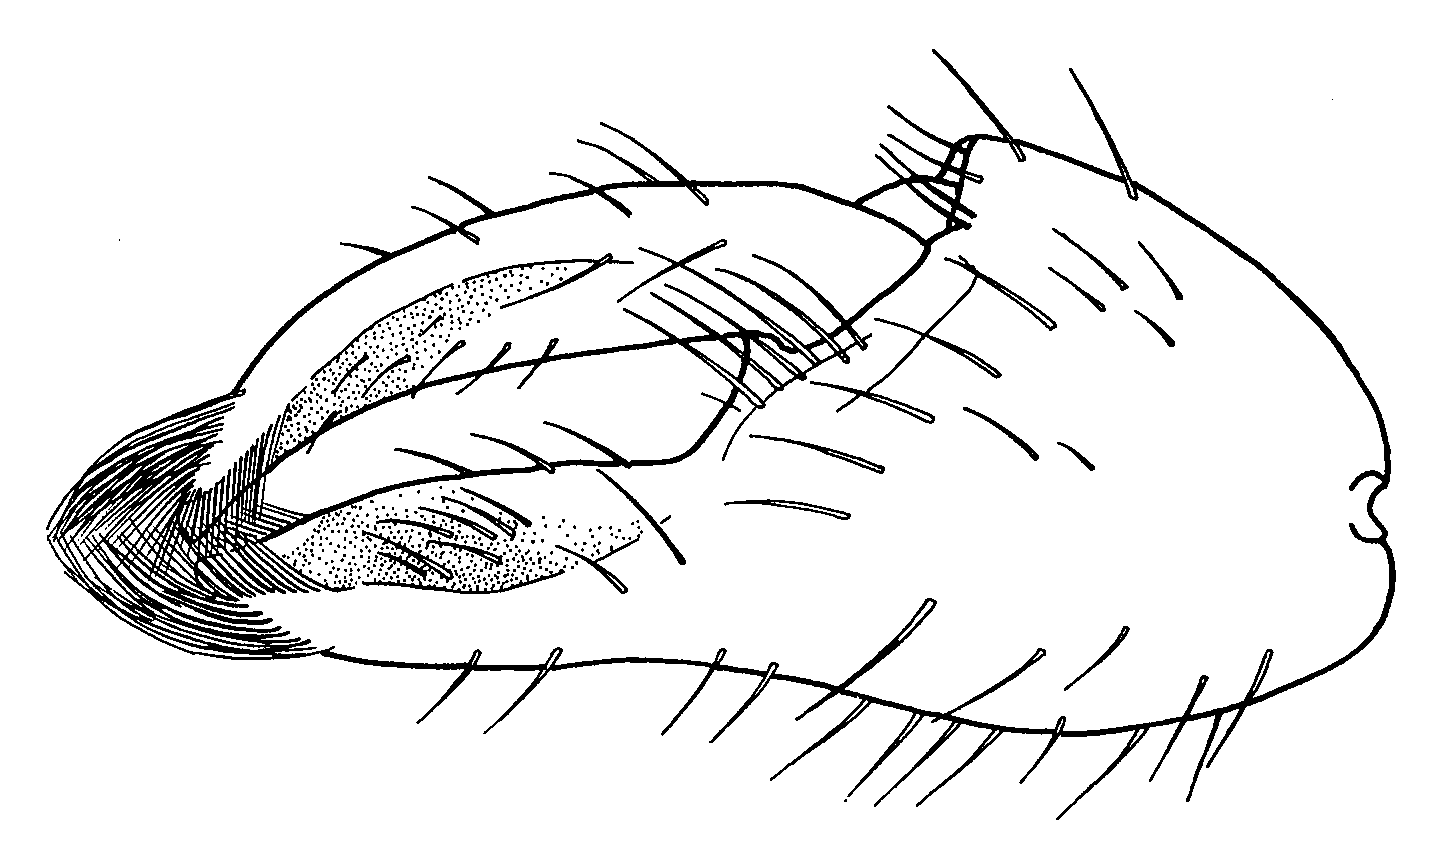 Uca panamensis: Crane (1975) image